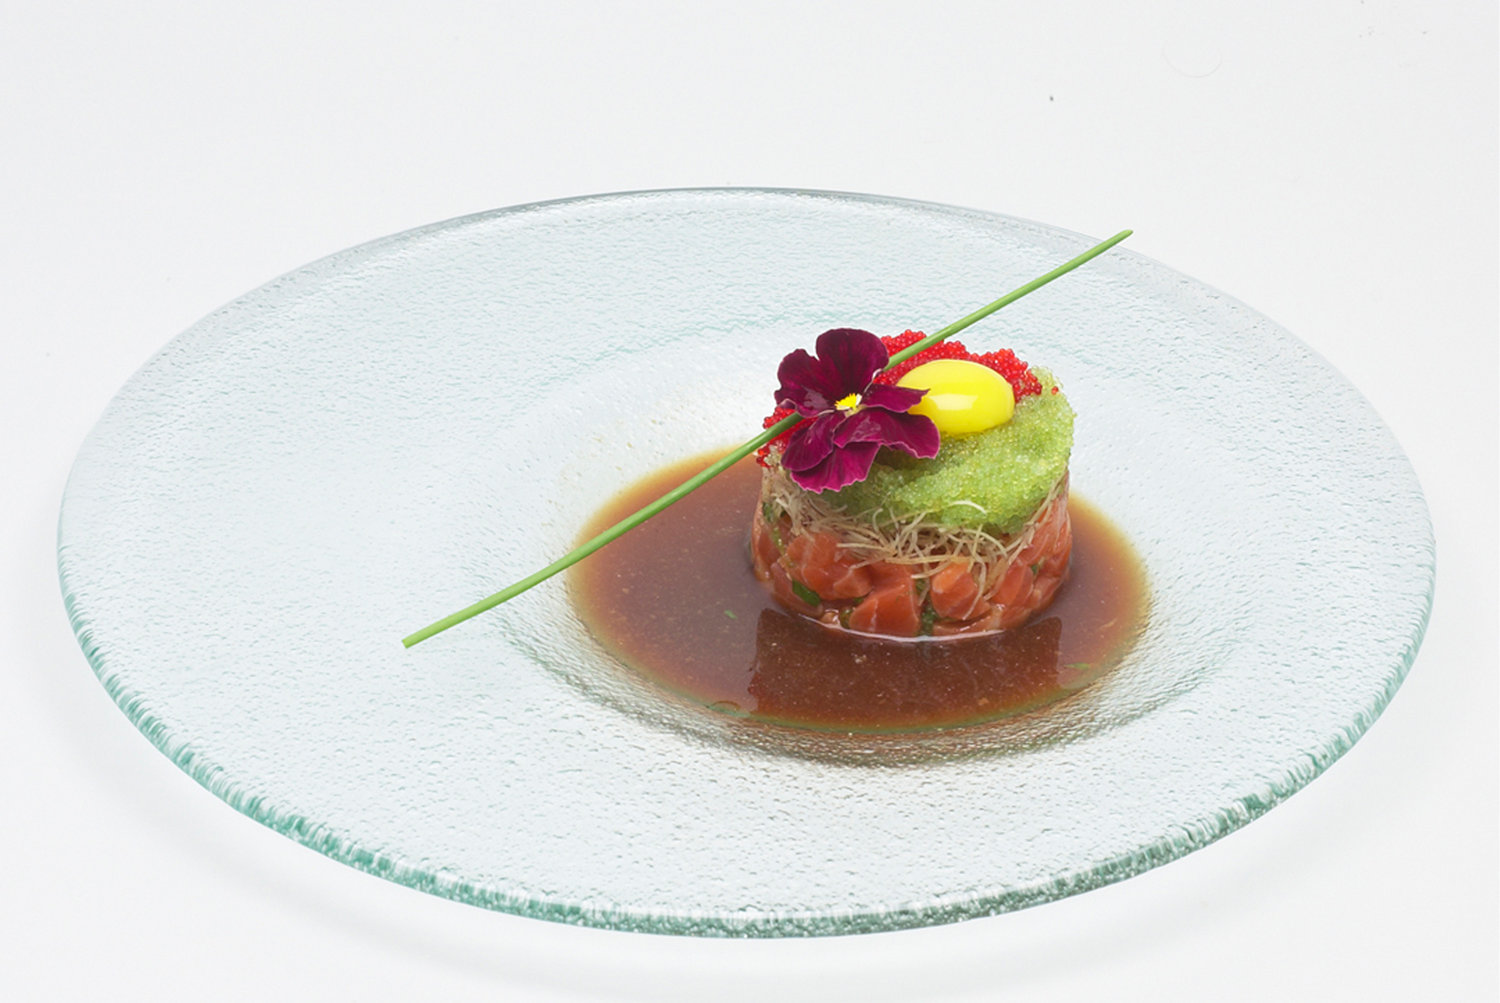 A Tuna Tartar from Jacky's Waterplace & Sushi Bar is edible art